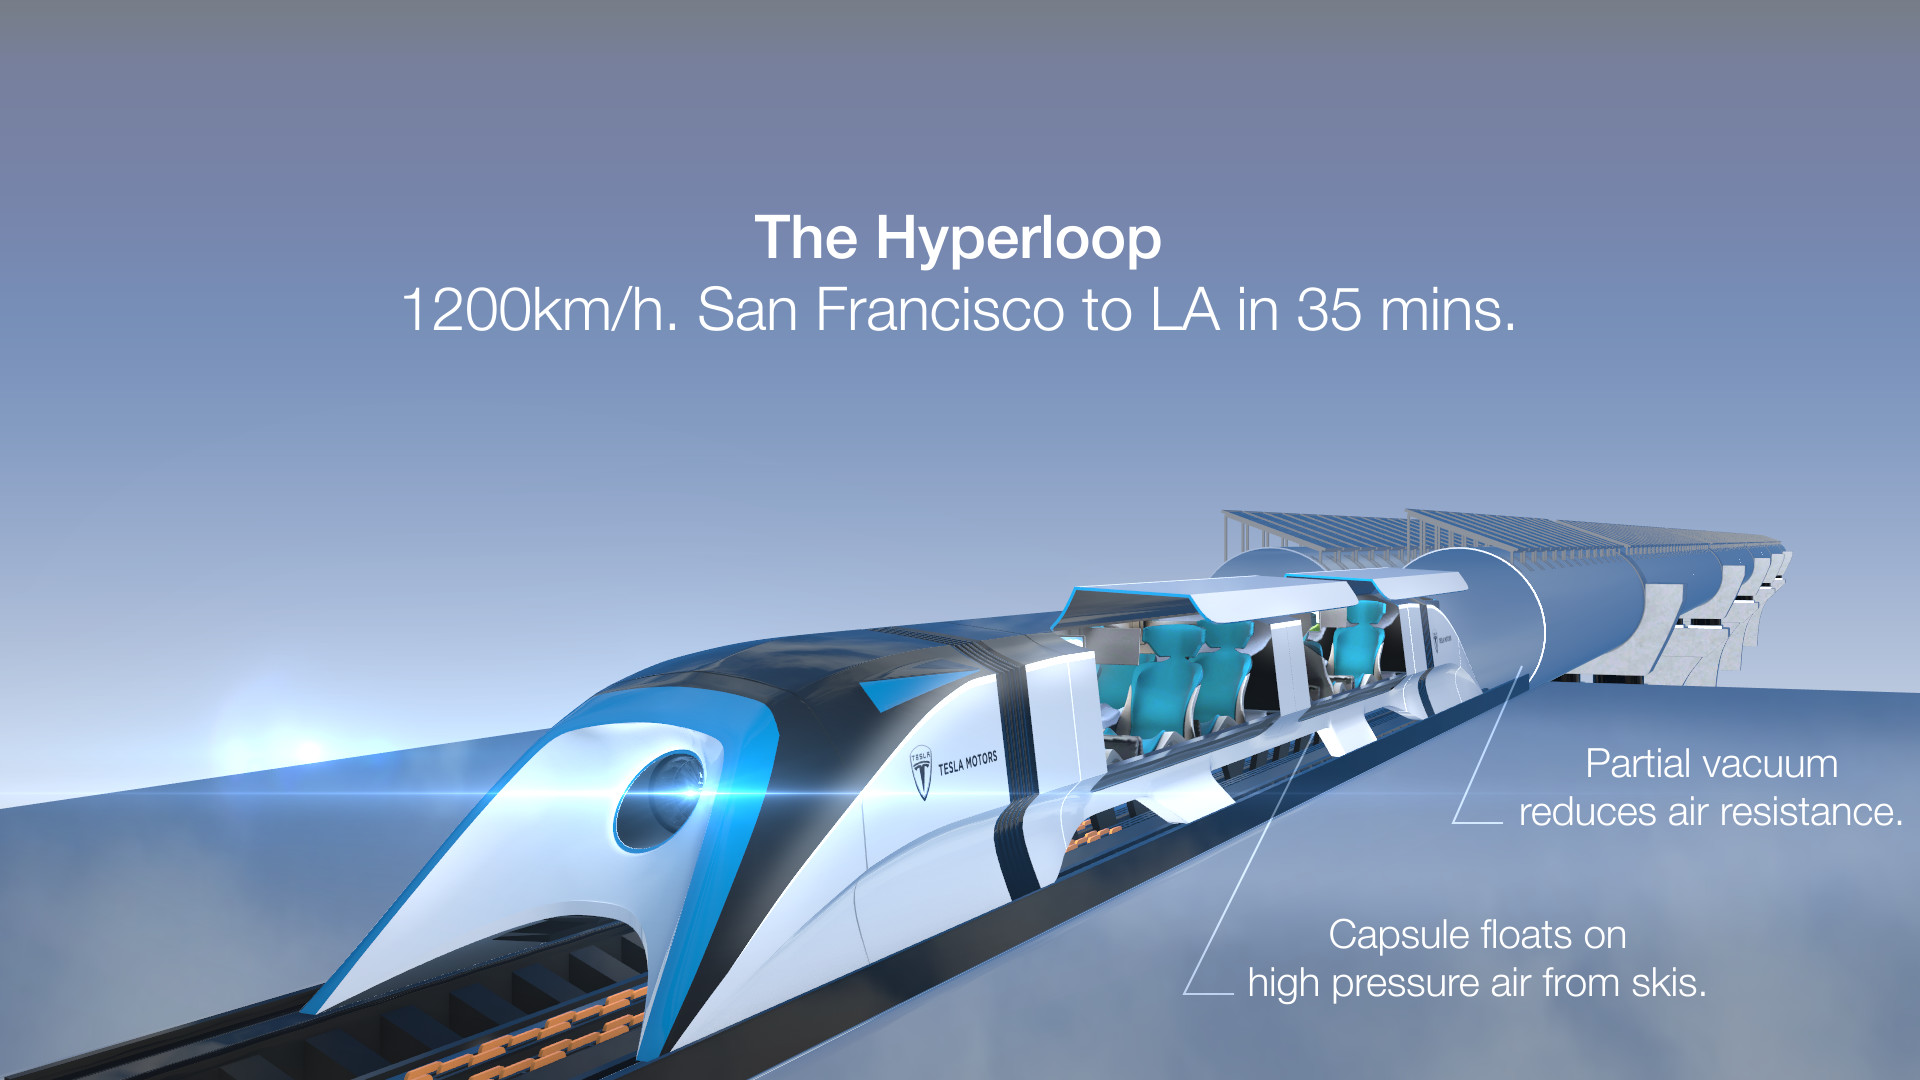 The hyperloop